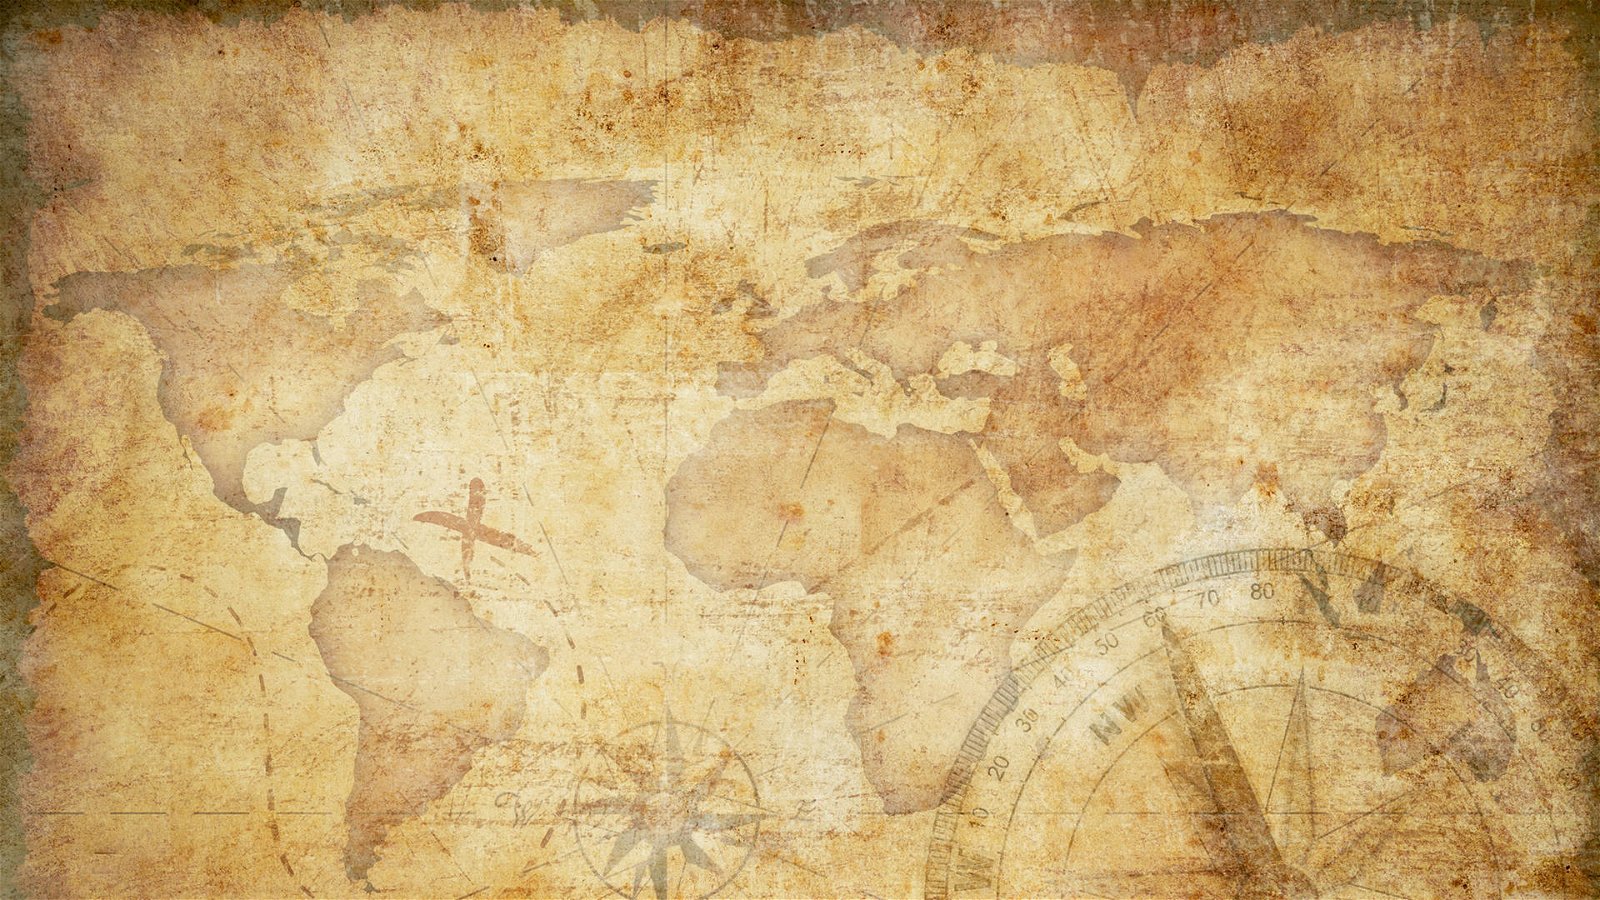 Immagine di Gratis 93.000 metri quadrati di mappe per i principali giochi di ruolo fantasy!